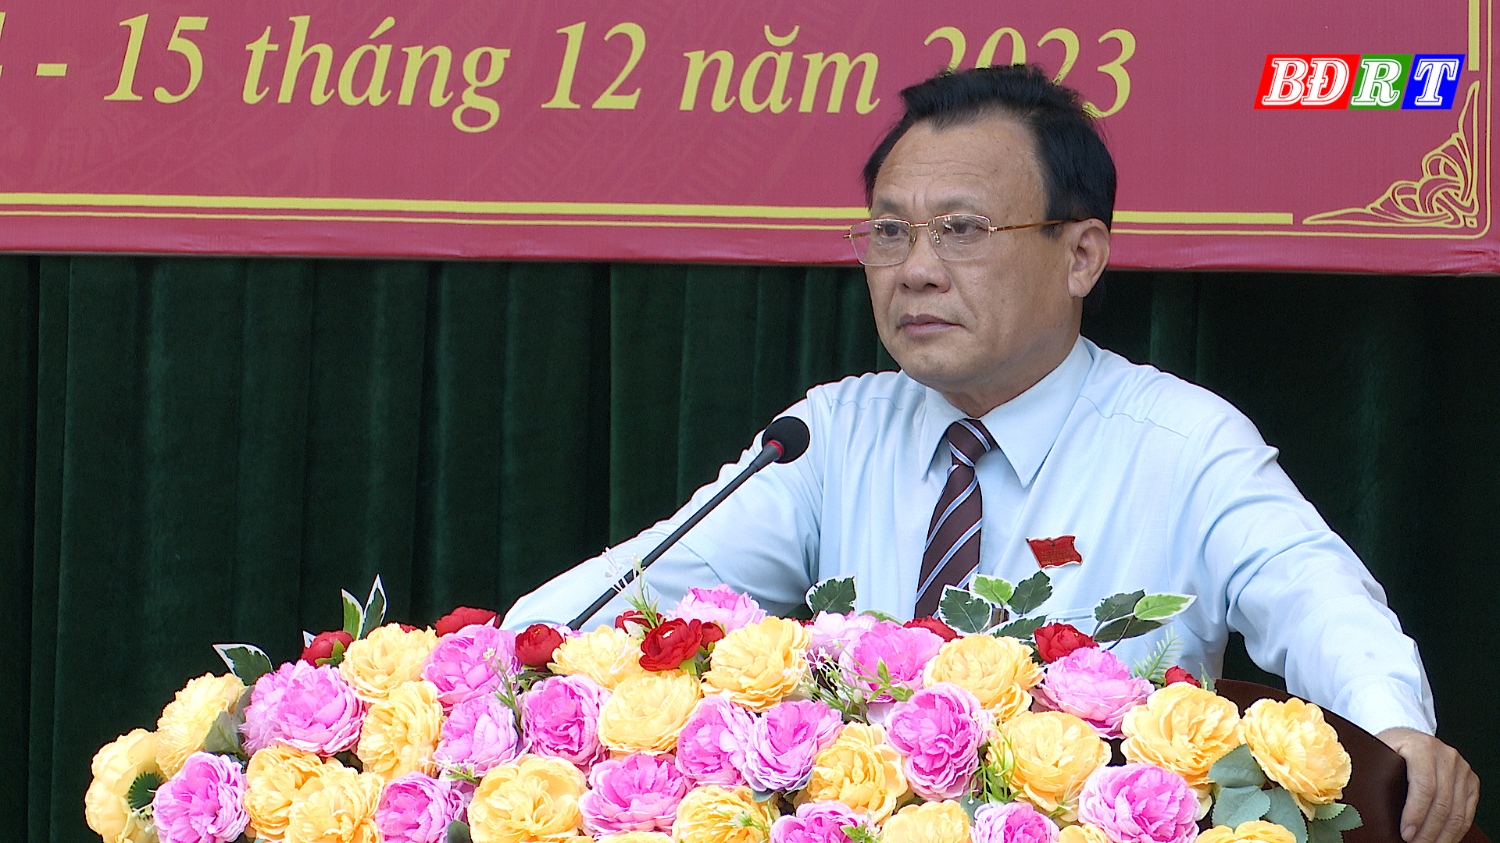 Đồng chí Phạm Duy Quang –Phó Bí thư Thường trực Thị ủy –Chủ tịch HĐND thị xã khai mạc kỳ họp